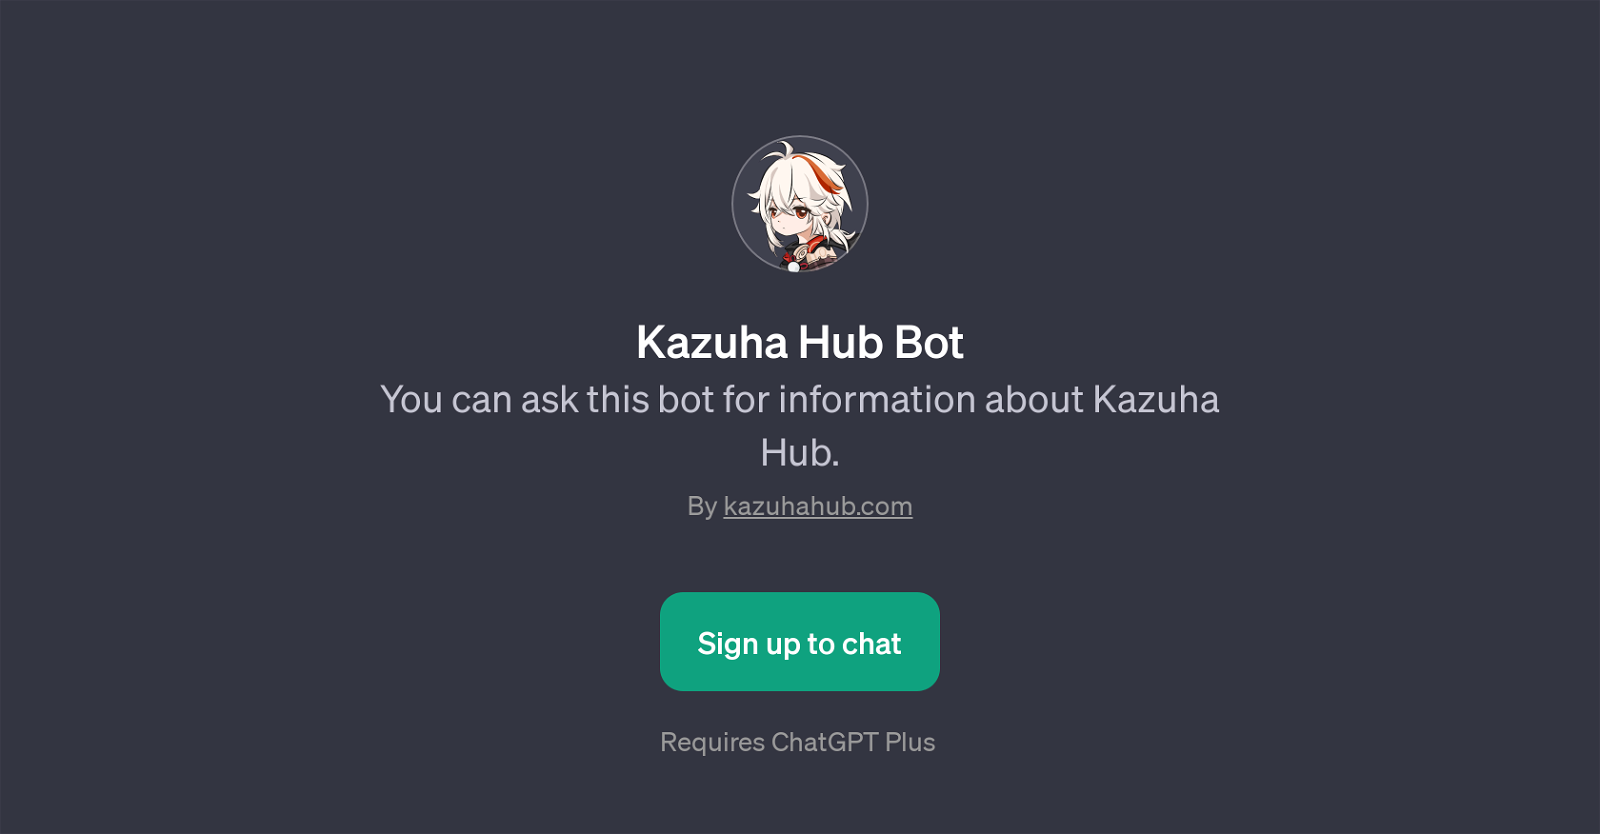 Kazuha Hub Bot website